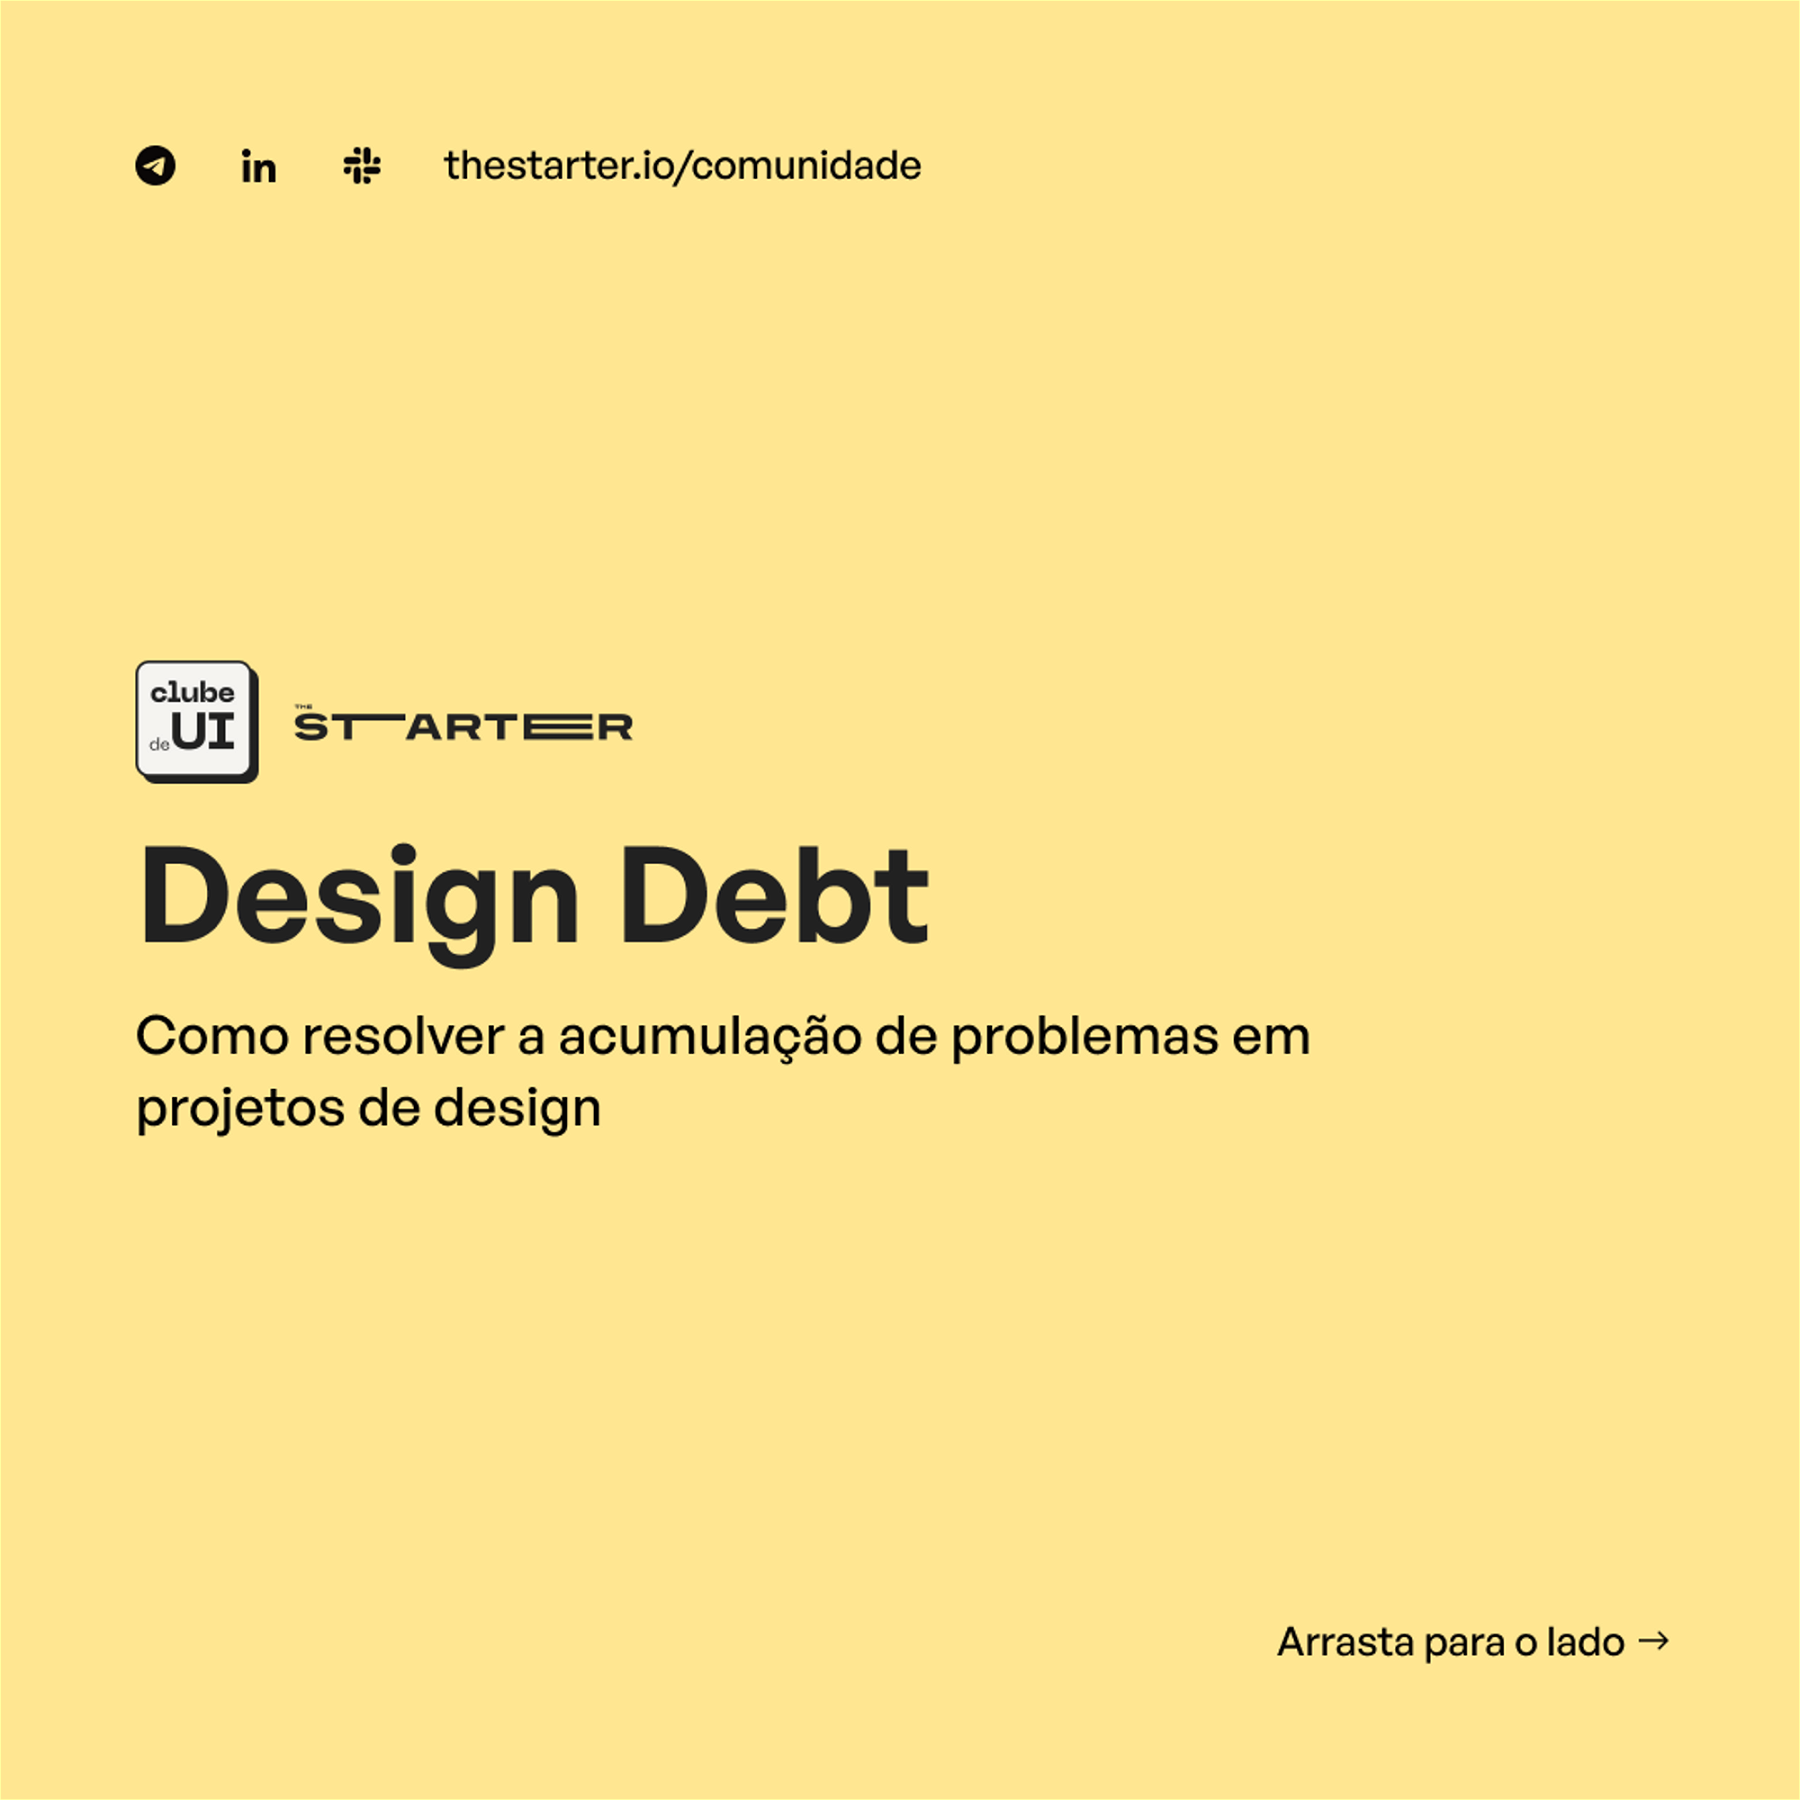 Design Debt: Como resolver a acumulação de problemas em projetos de design